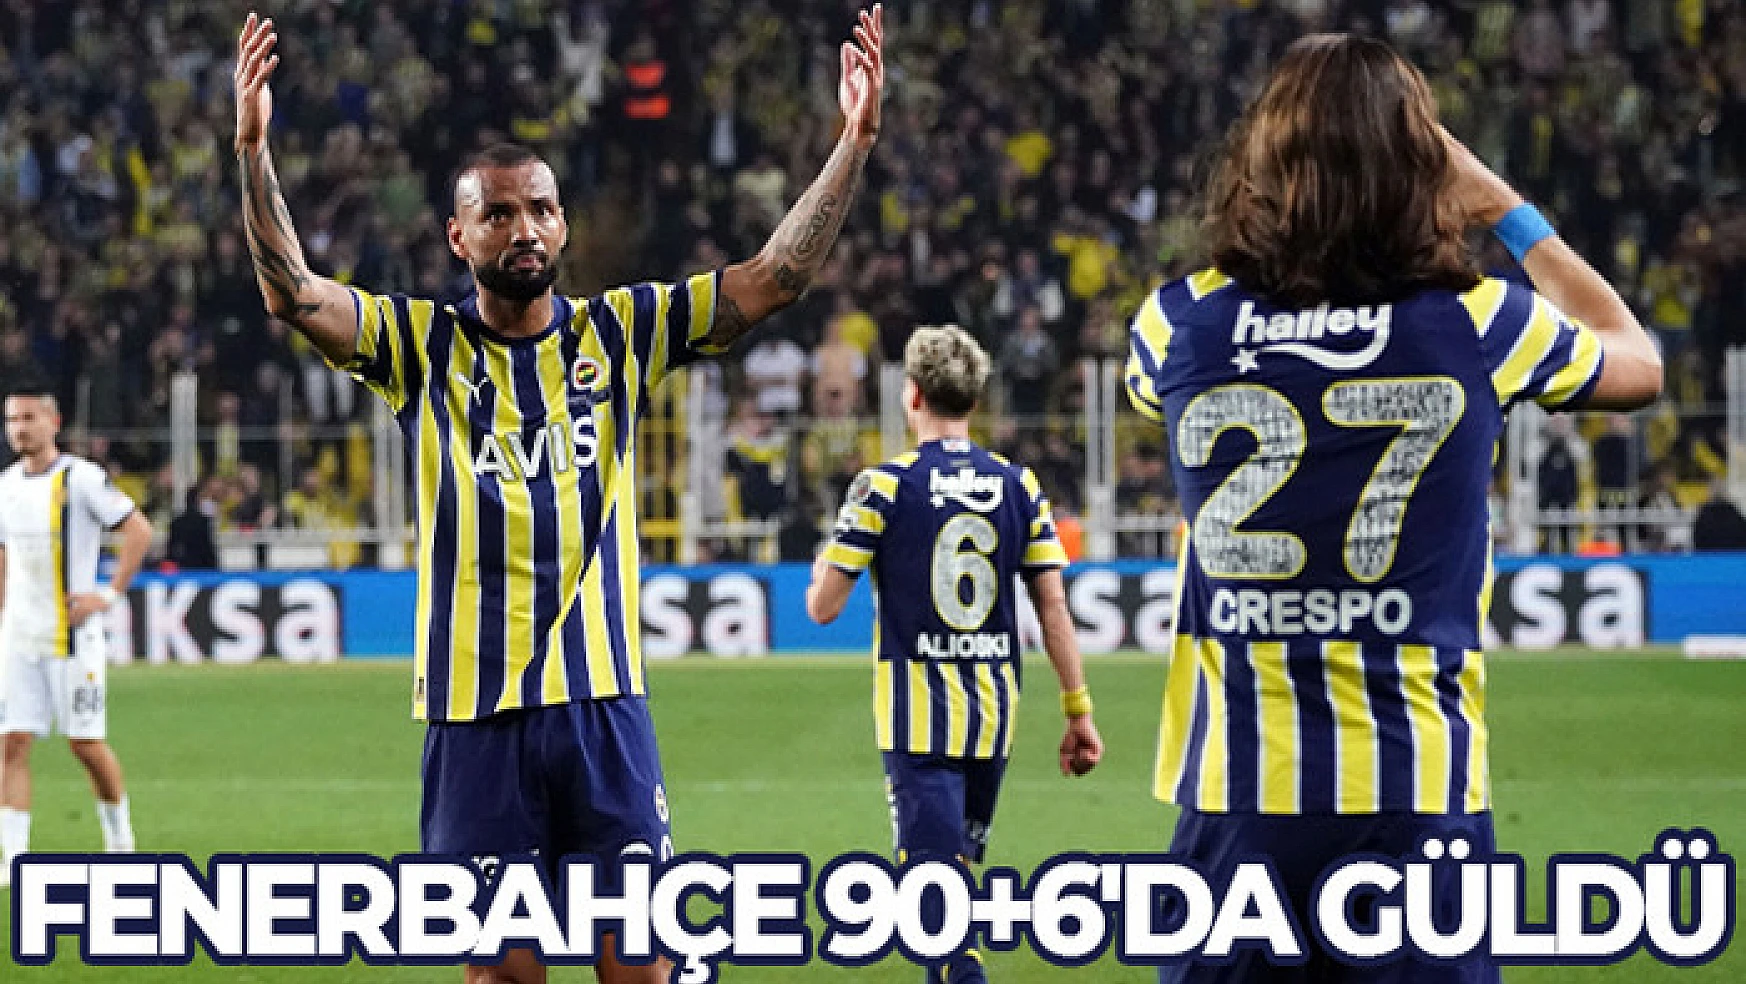 Fenerbahçe 90+6'da güldü